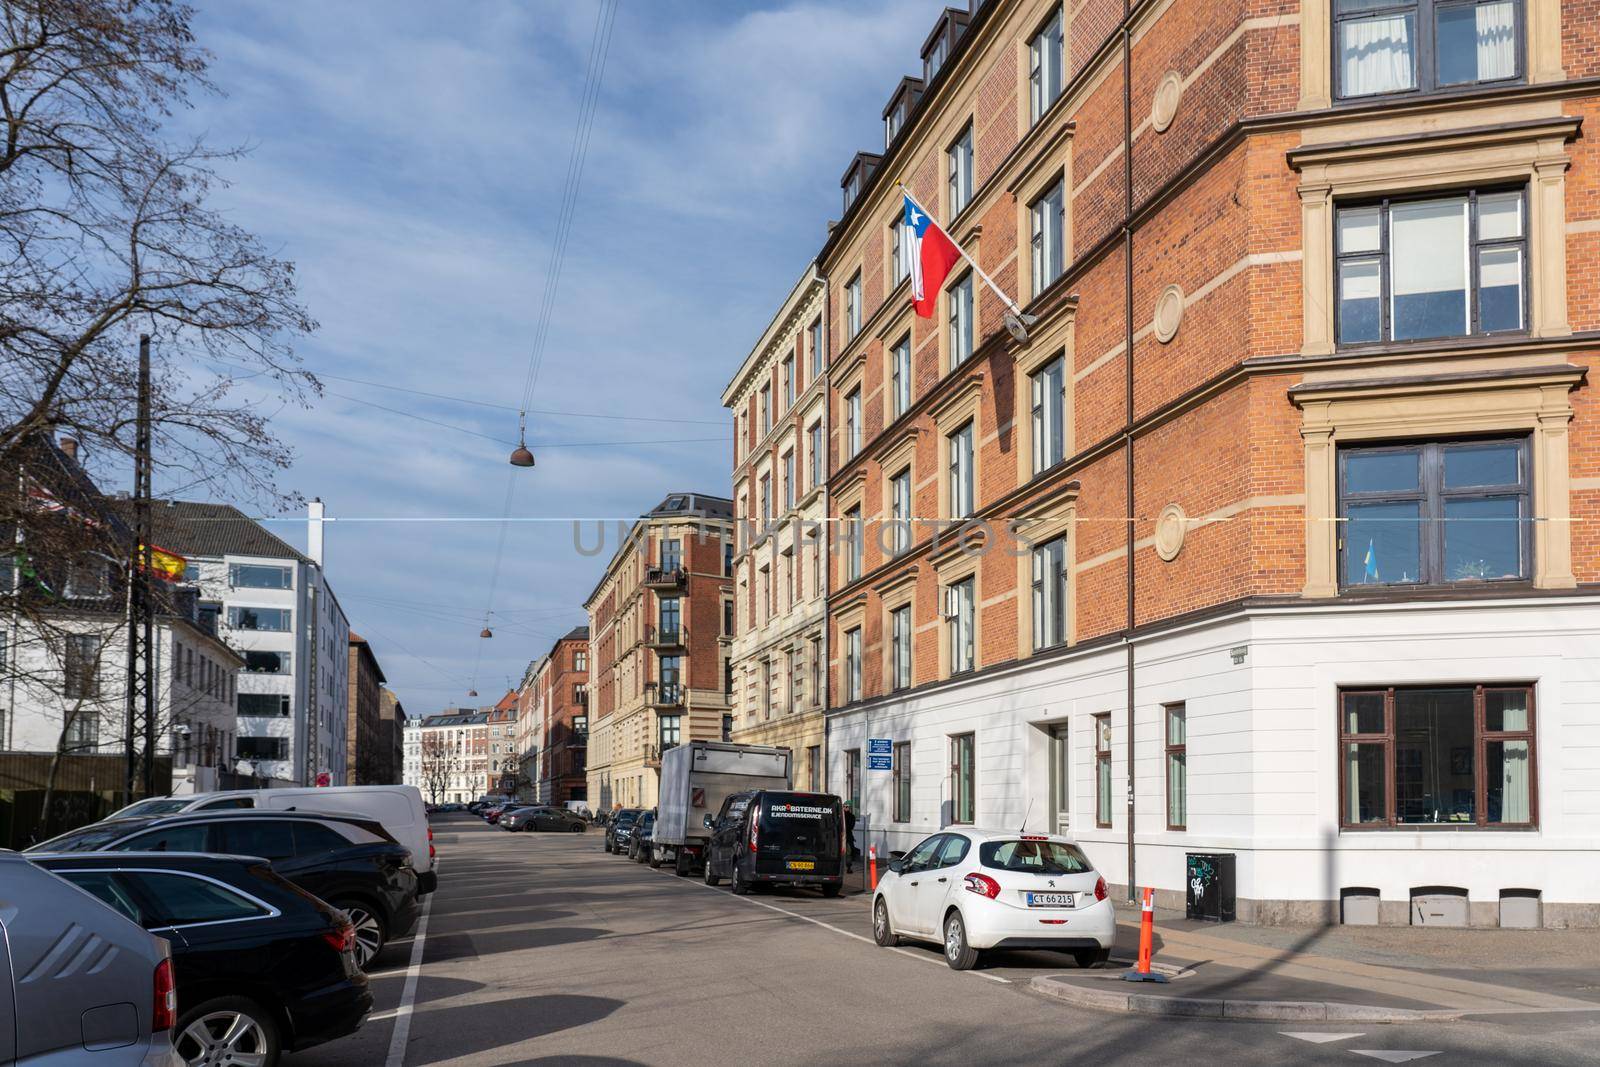 Embassy of Chile in Copenhagen, Denmark by oliverfoerstner